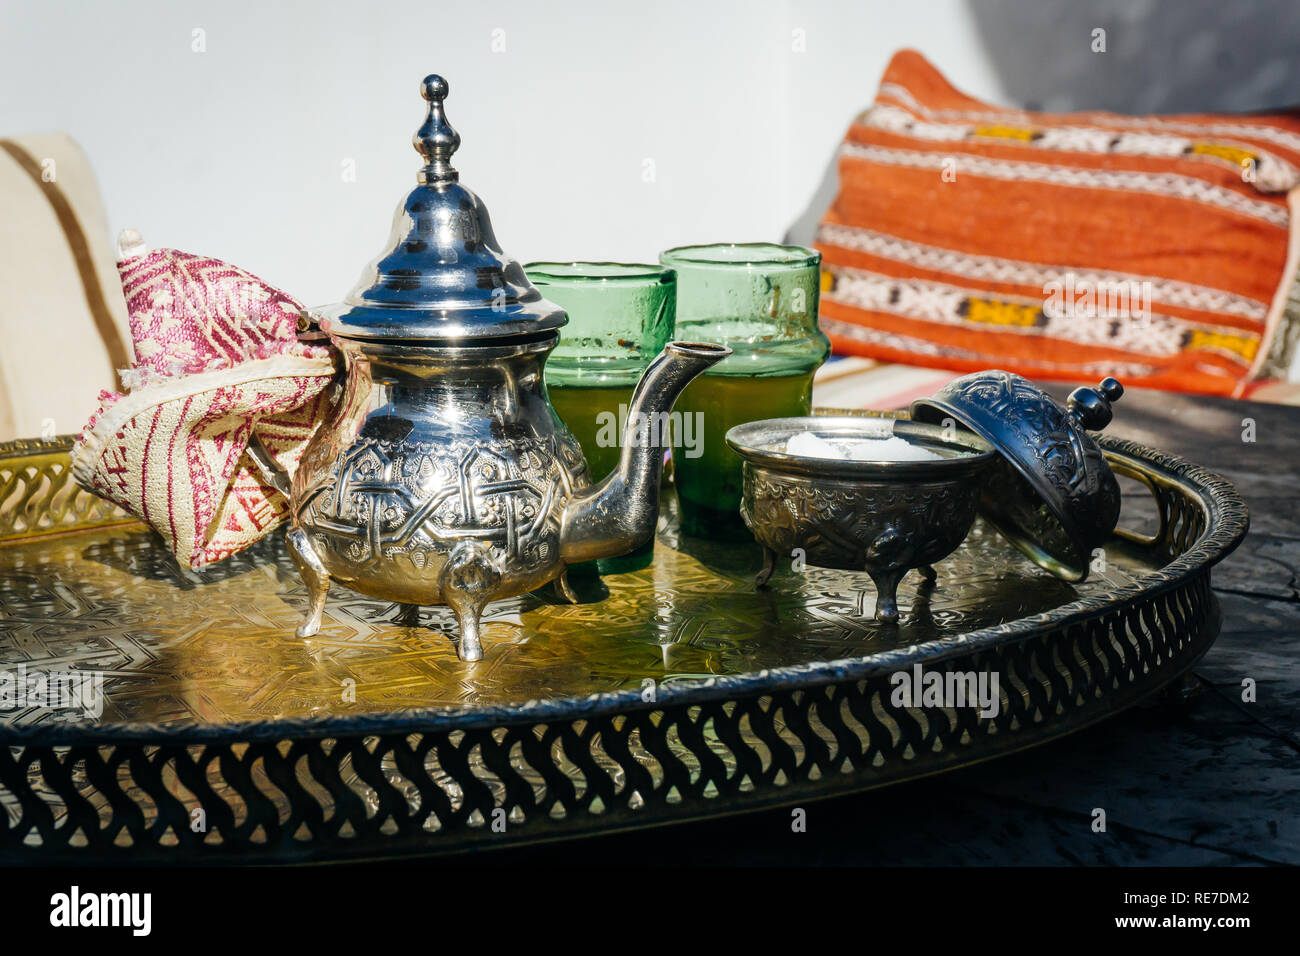 Thé à la menthe arabe (marocain le thé à la menthe) La boisson chaude dans le Moyen-Orient et le monde musulman. Servi dans une théière en argent fer spécial avec du sucre Banque D'Images